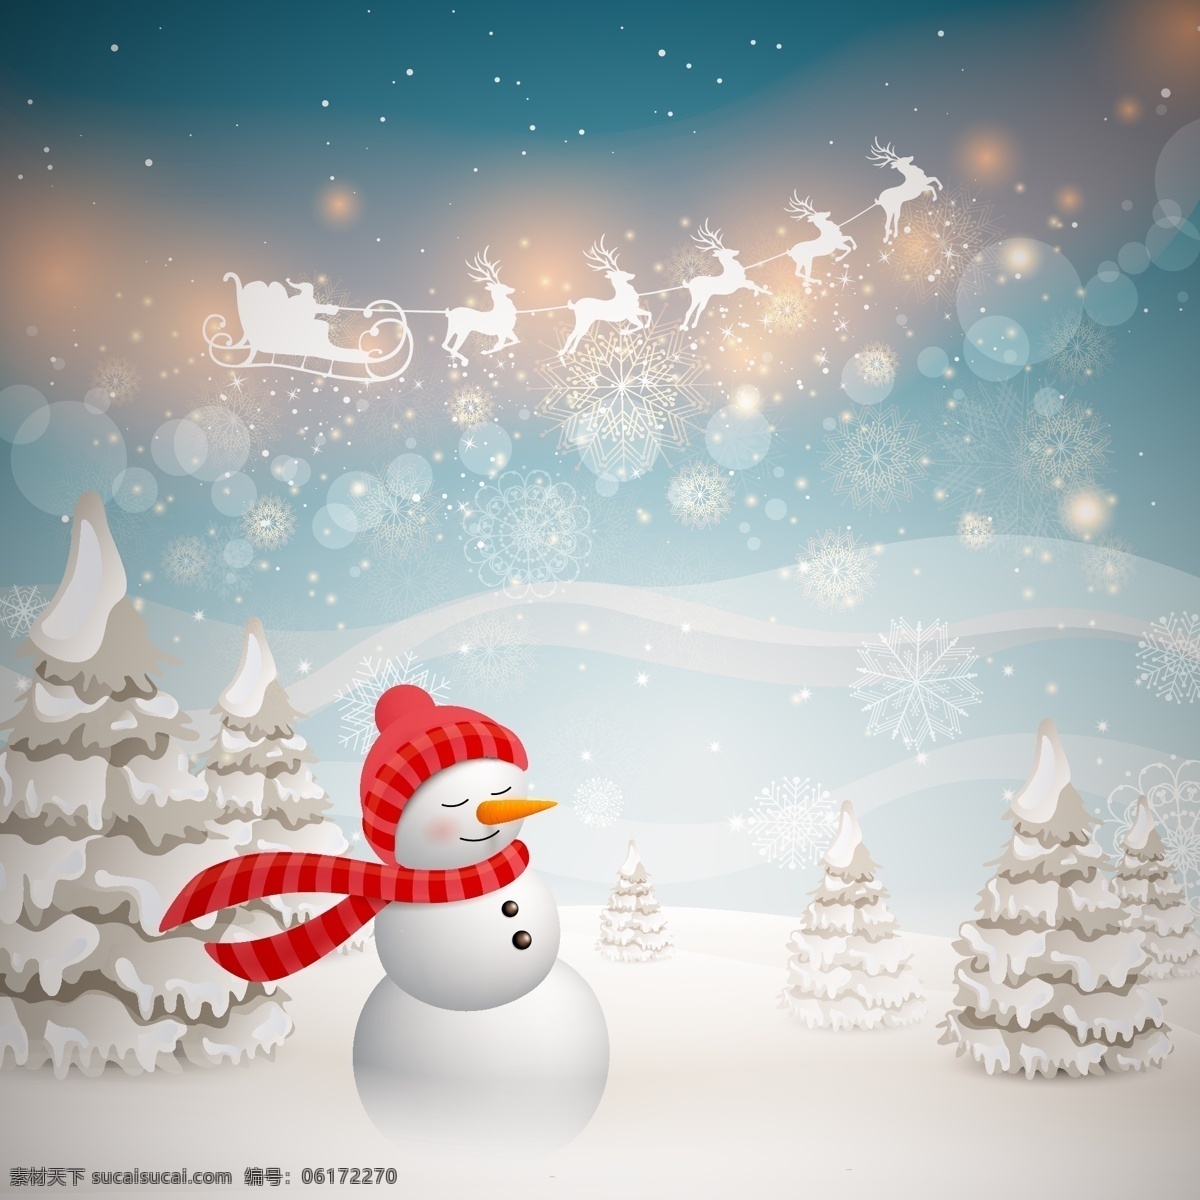 雪地里的雪人 白雪 红围巾 麋鹿 圣诞节 圣诞树 雪人